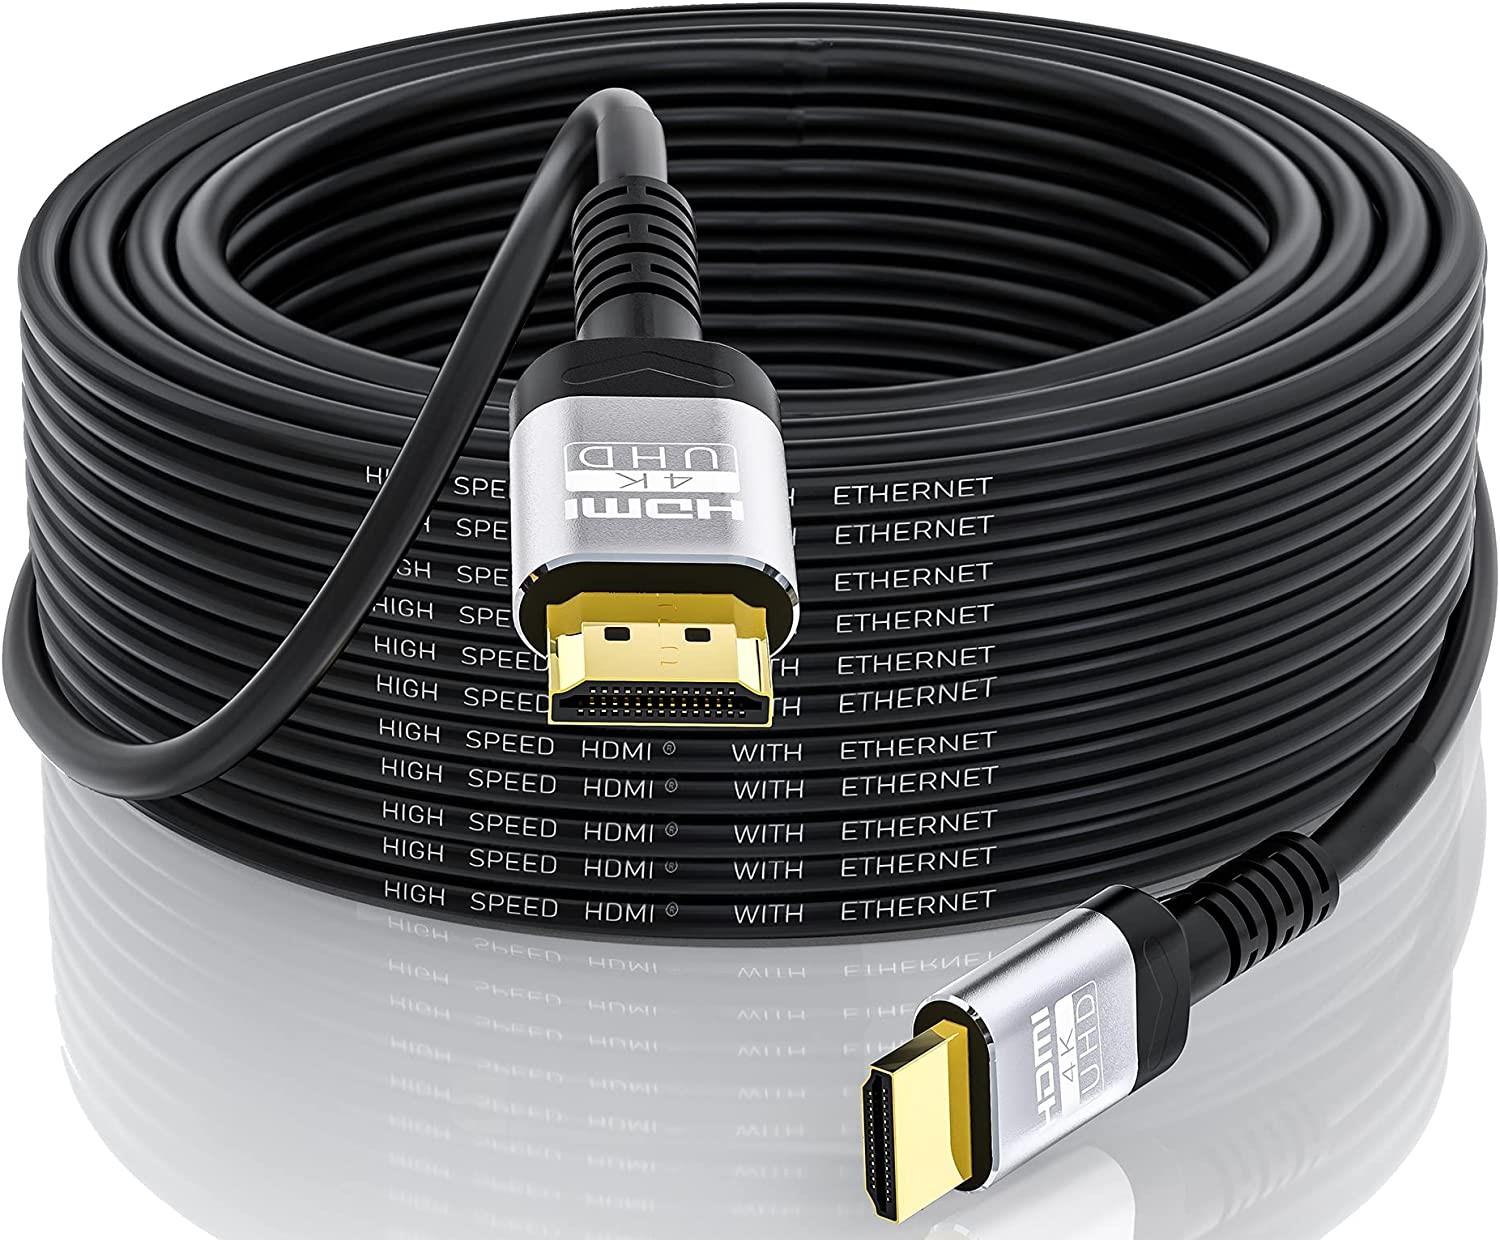 HDMI - Koji je kvalitetan HDMI kabel? - Savjeti @ Bug.hr